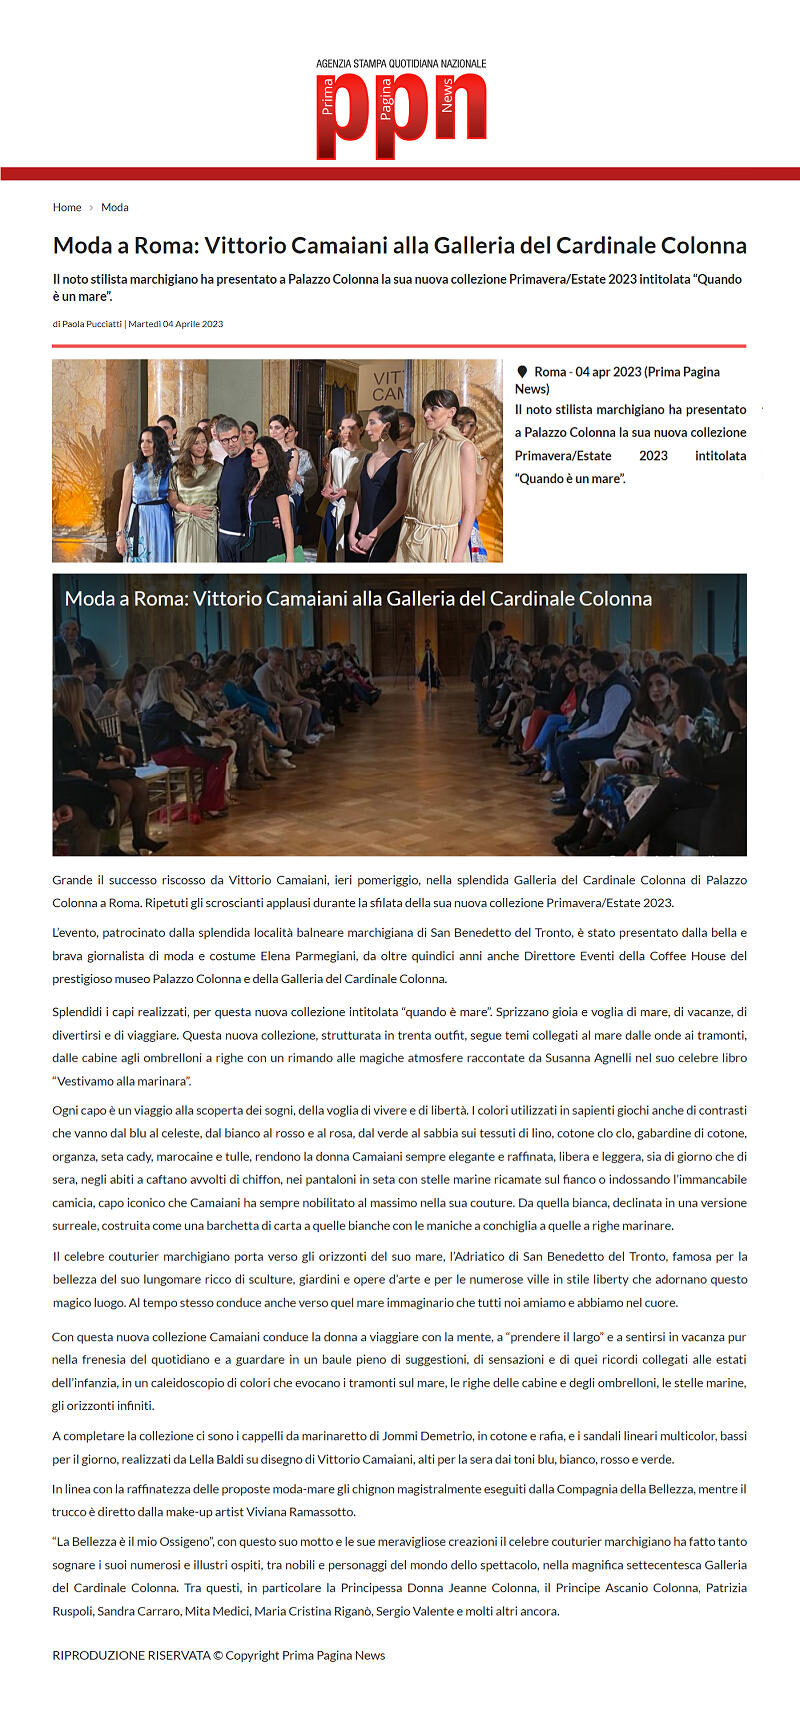 Moda a Roma: Vittorio Camaiani alla Galleria del Cardinale Colonna, Prima Pagina News, 4 aprile 2023